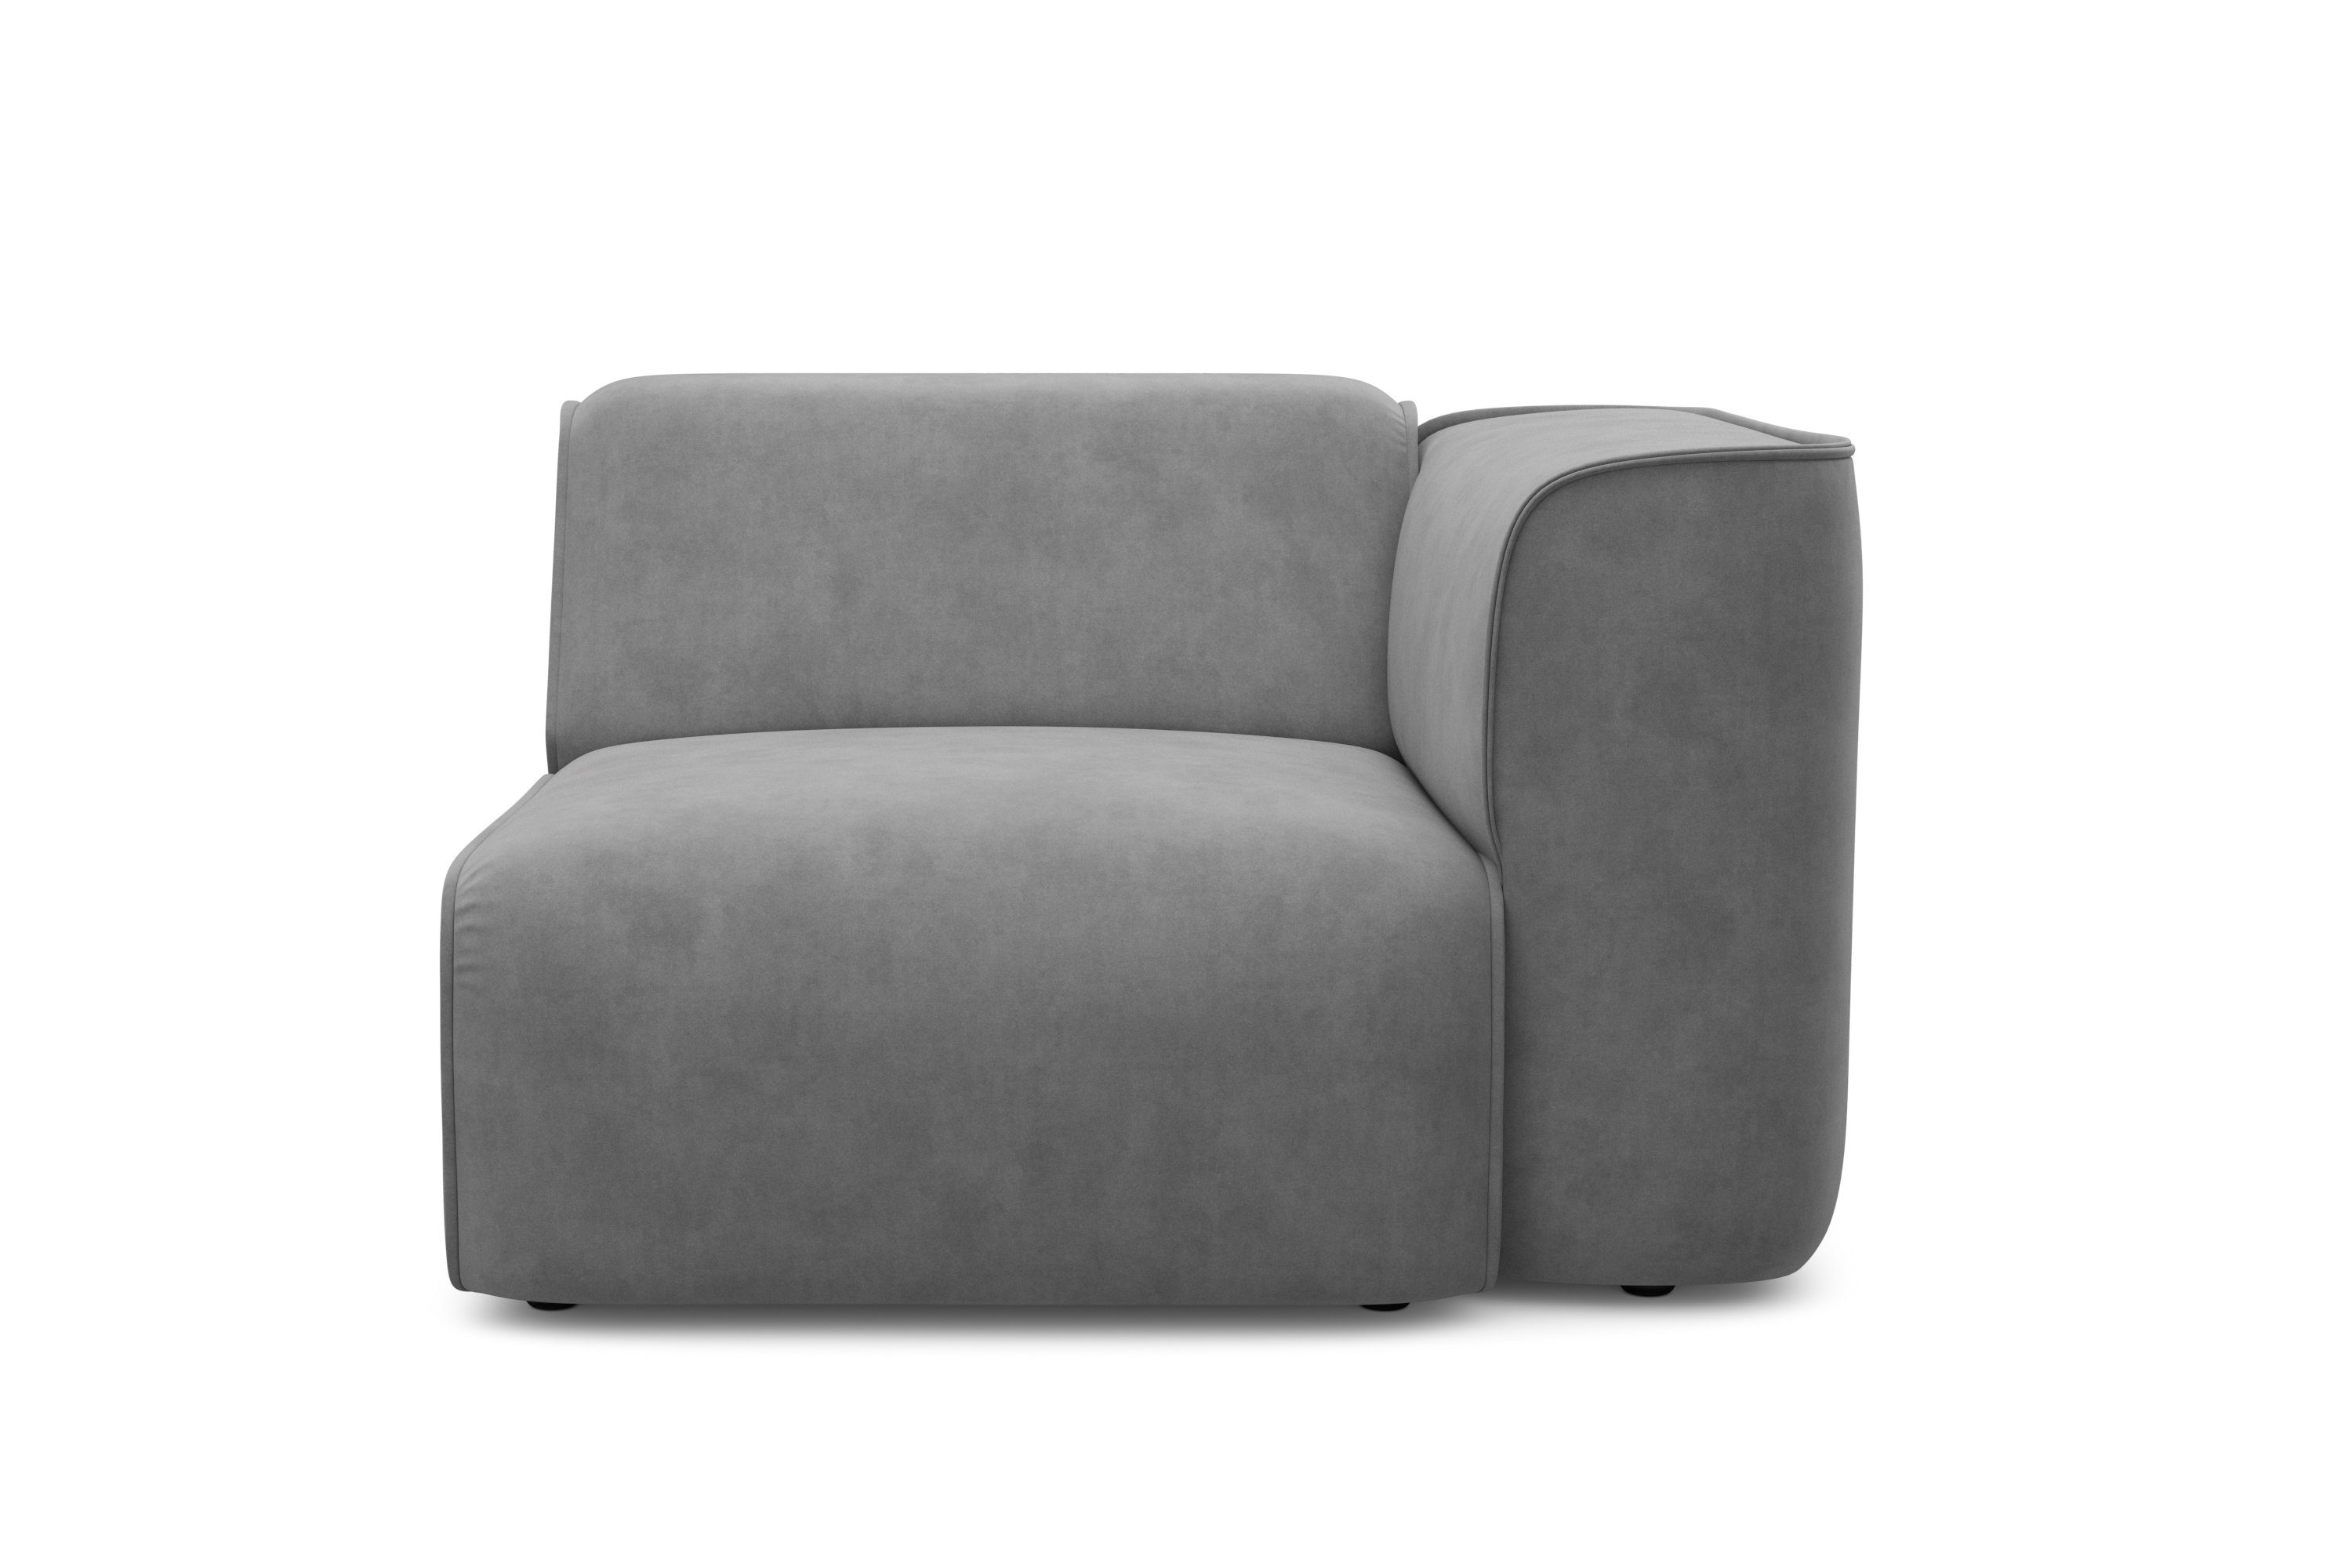 RAUM.ID Sessel Merid, als Modul oder separat verwendbar, für individuelle Zusammenstellung